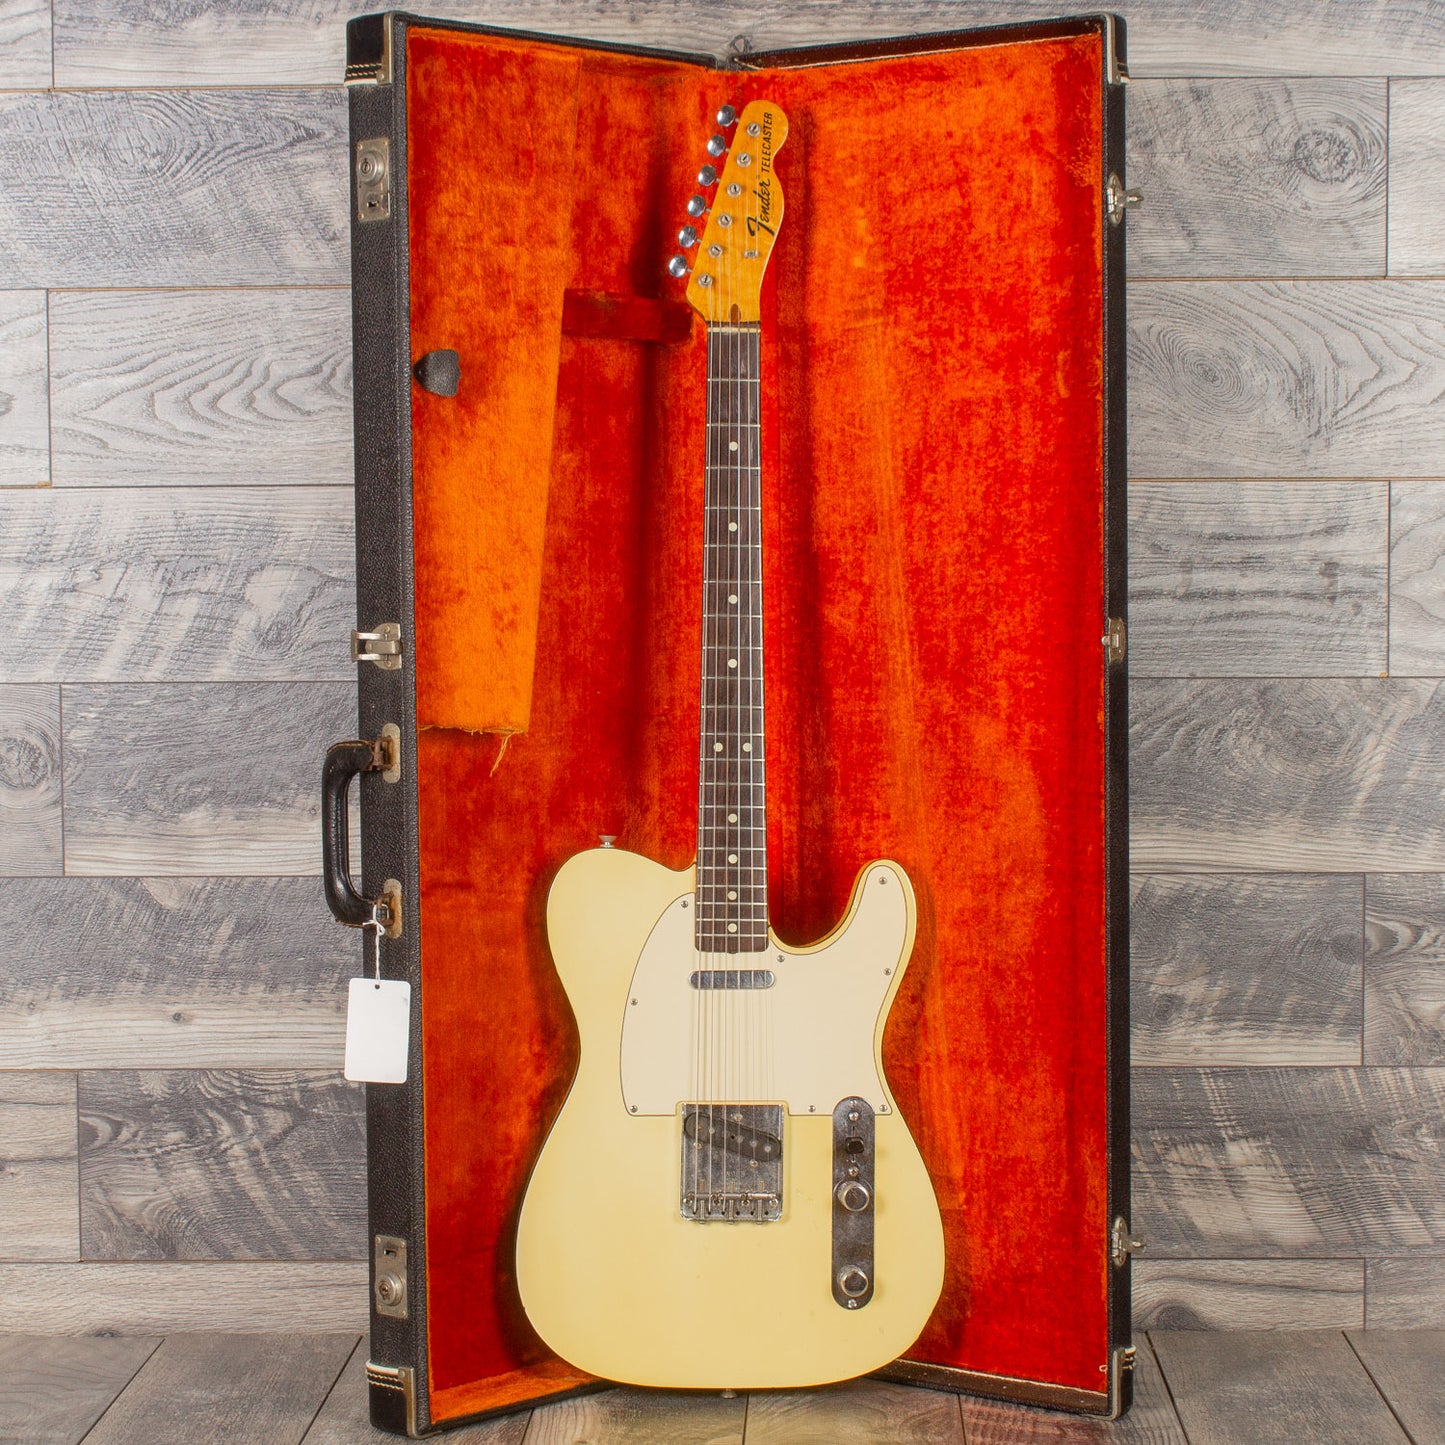 1971 Fender Telecaster Custom - Olympic White/Black Binding